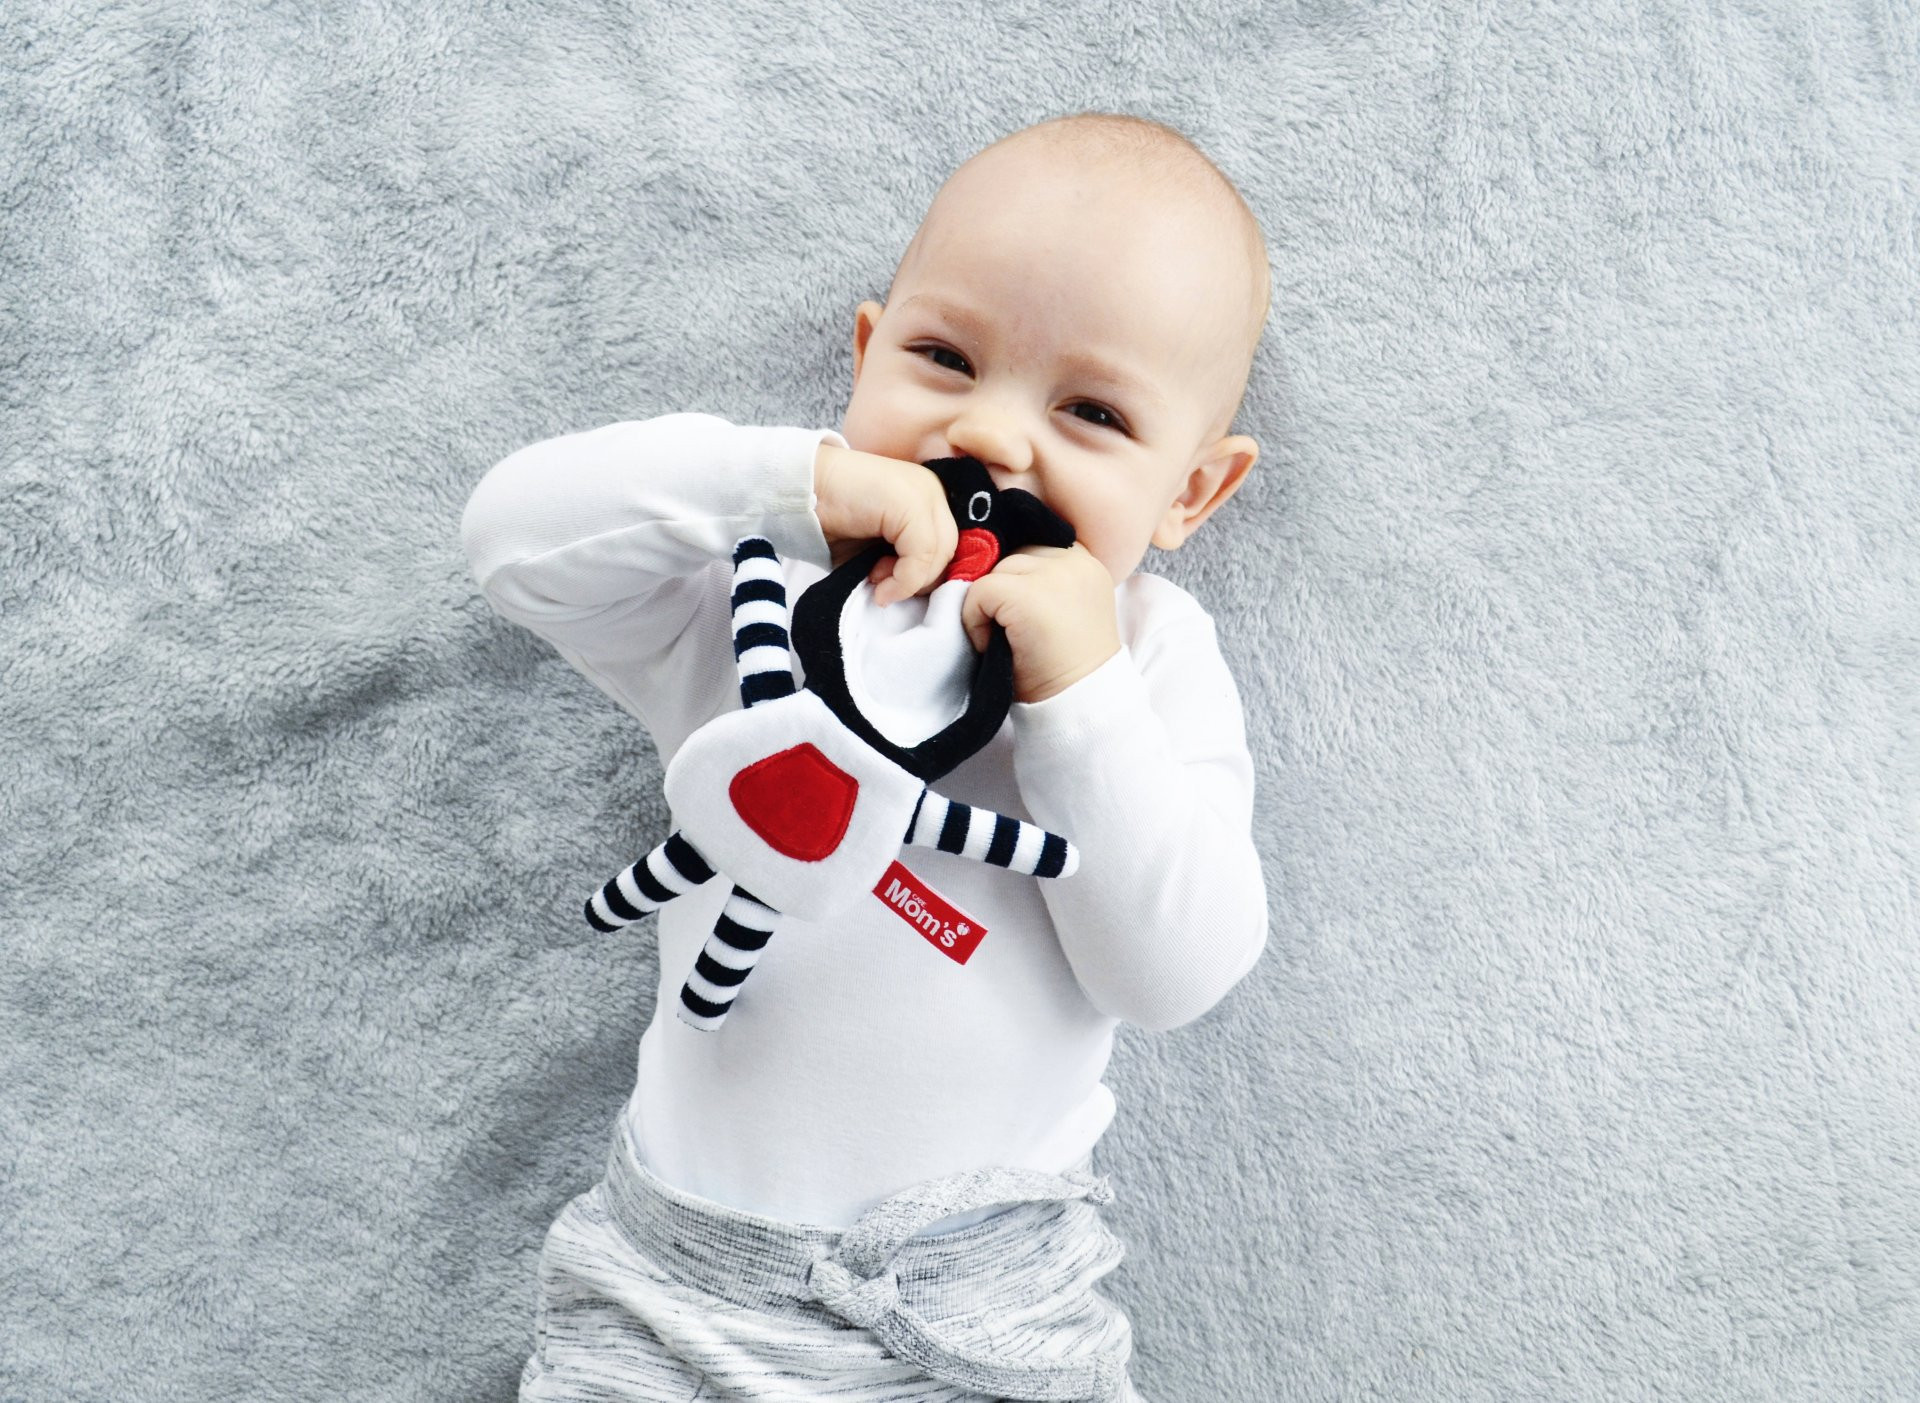 Černobílé hračky: Jak správně stimulovat zrak dítěte?